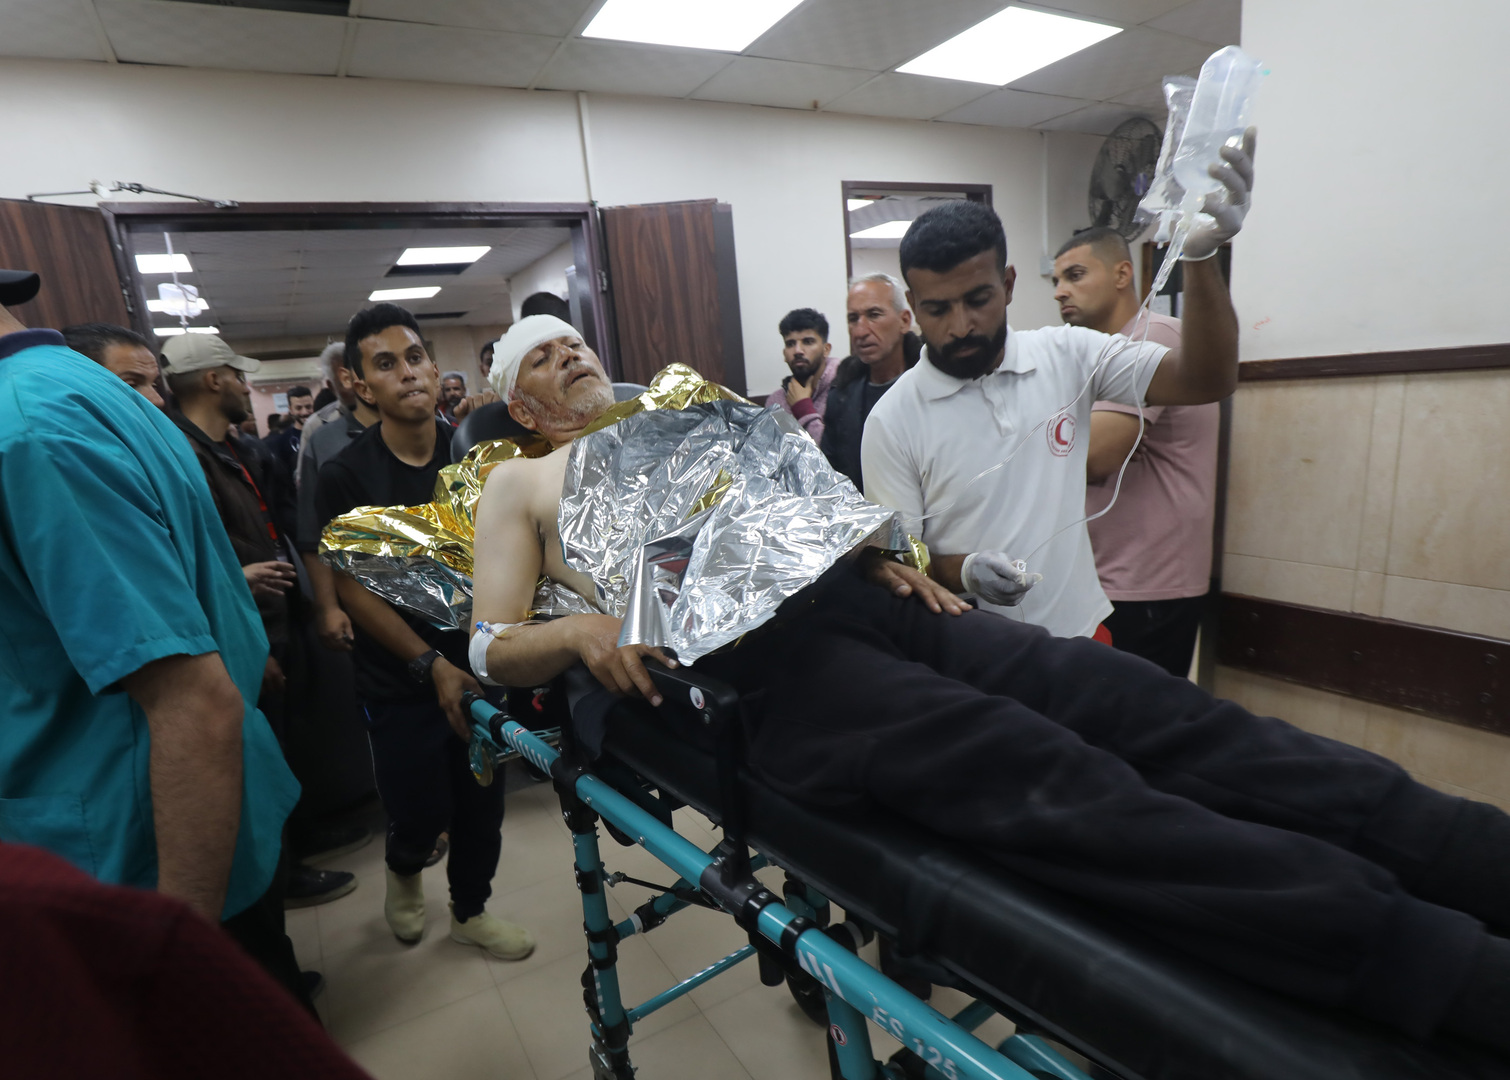 صحة غزة تحذر من كارثة صحية في القطاع